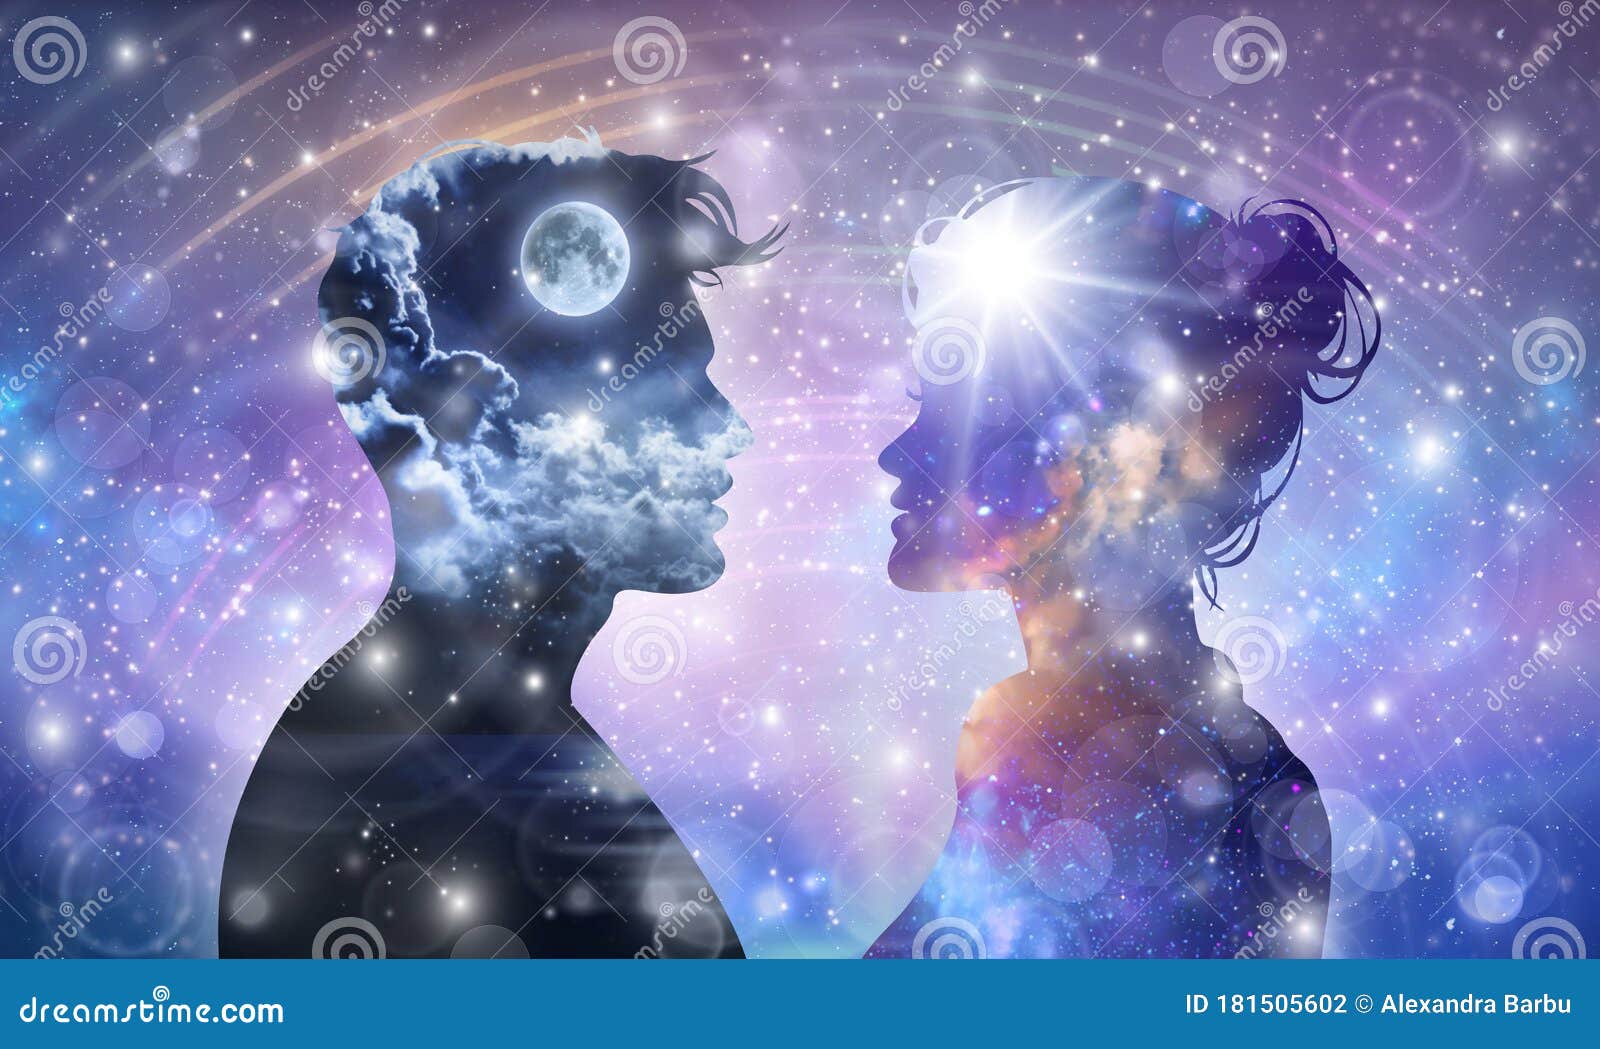 Kosmische Liebhaber der menschlichen männlich-weiblichen Körperuniversuminspirationsaufklärungseinheitsbewusstsein Yin Yang-Zwilli